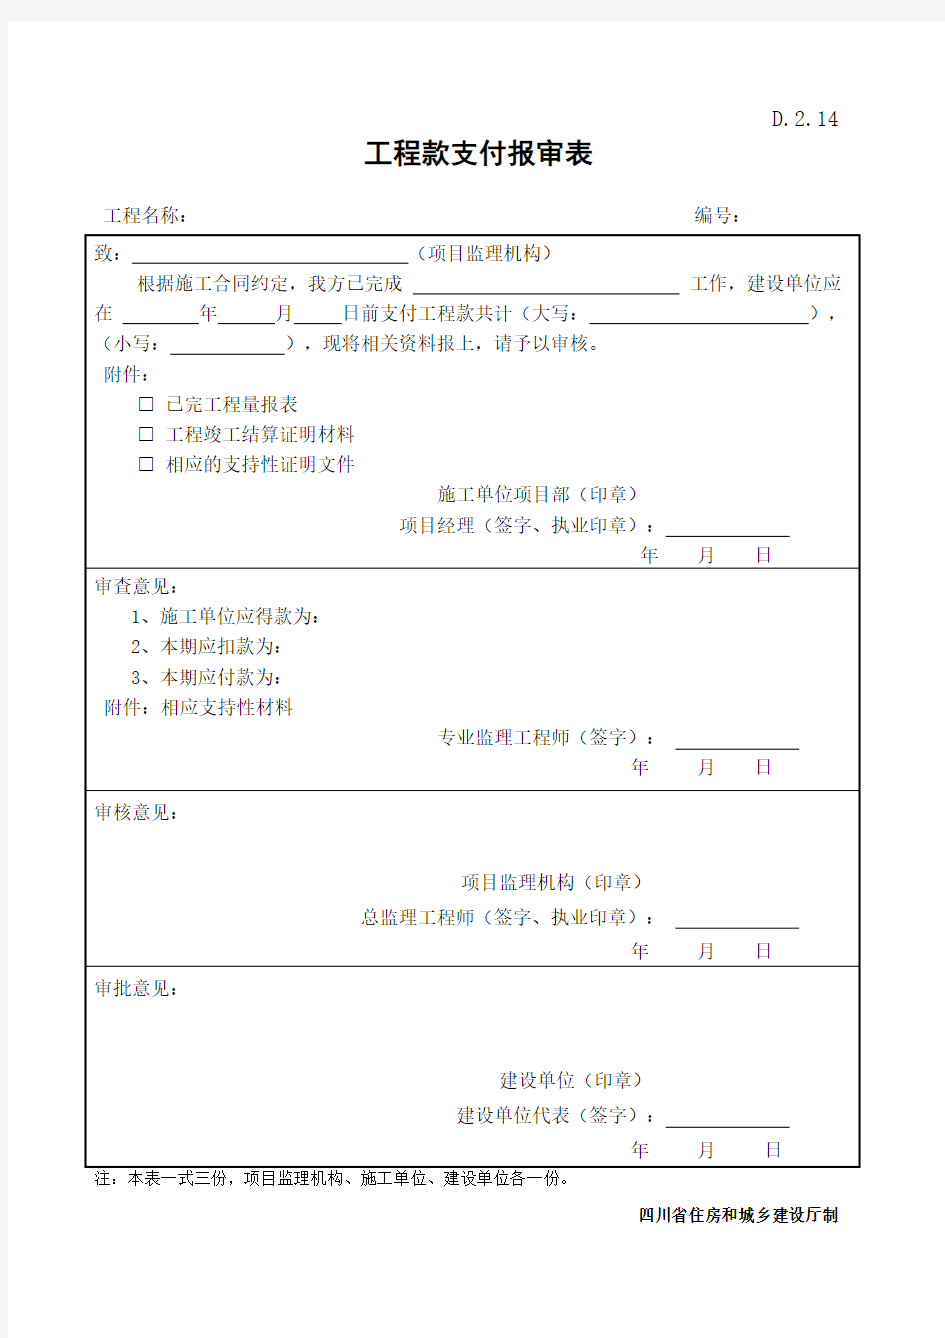 D.2.14   工程款支付报审表样表(四川省)